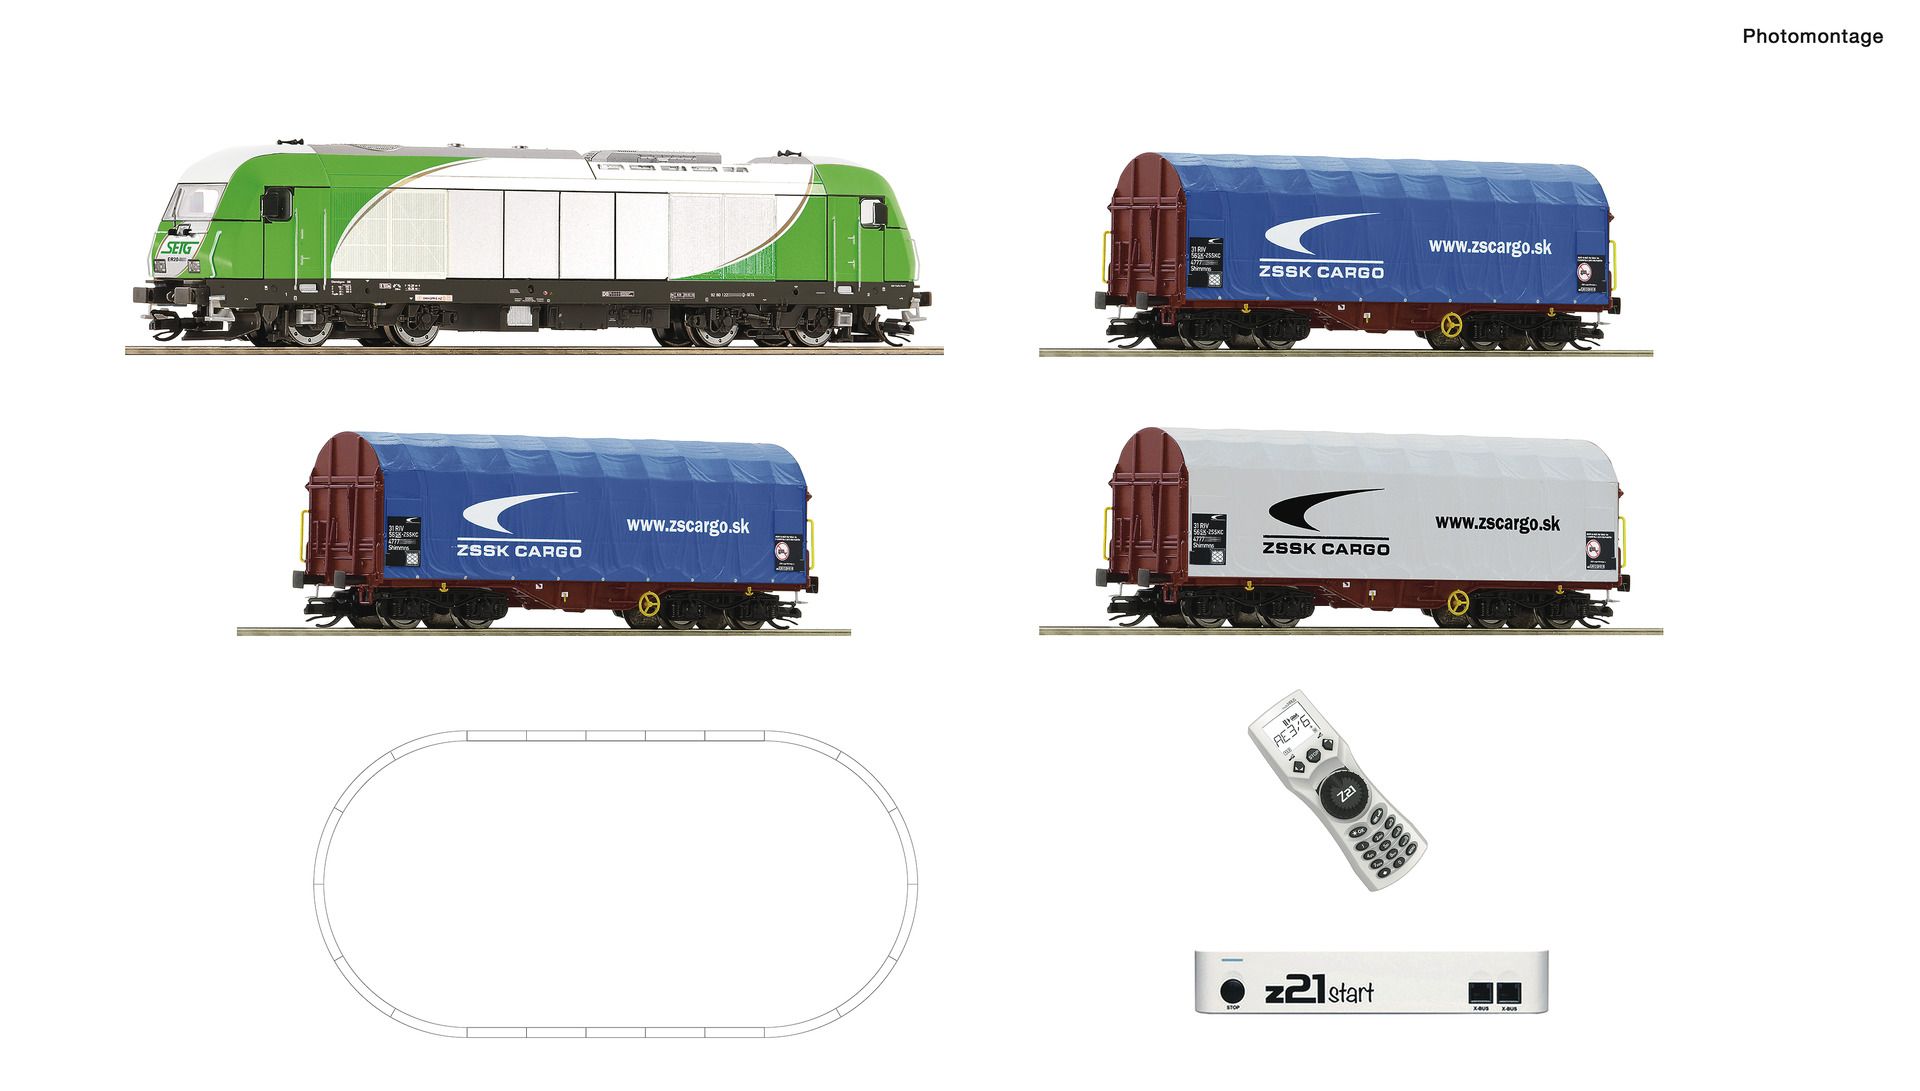 Roco 5190001 - Digitales Startset mit ER 20 und Güterzug, SETG, Ep.VI, mit z21start